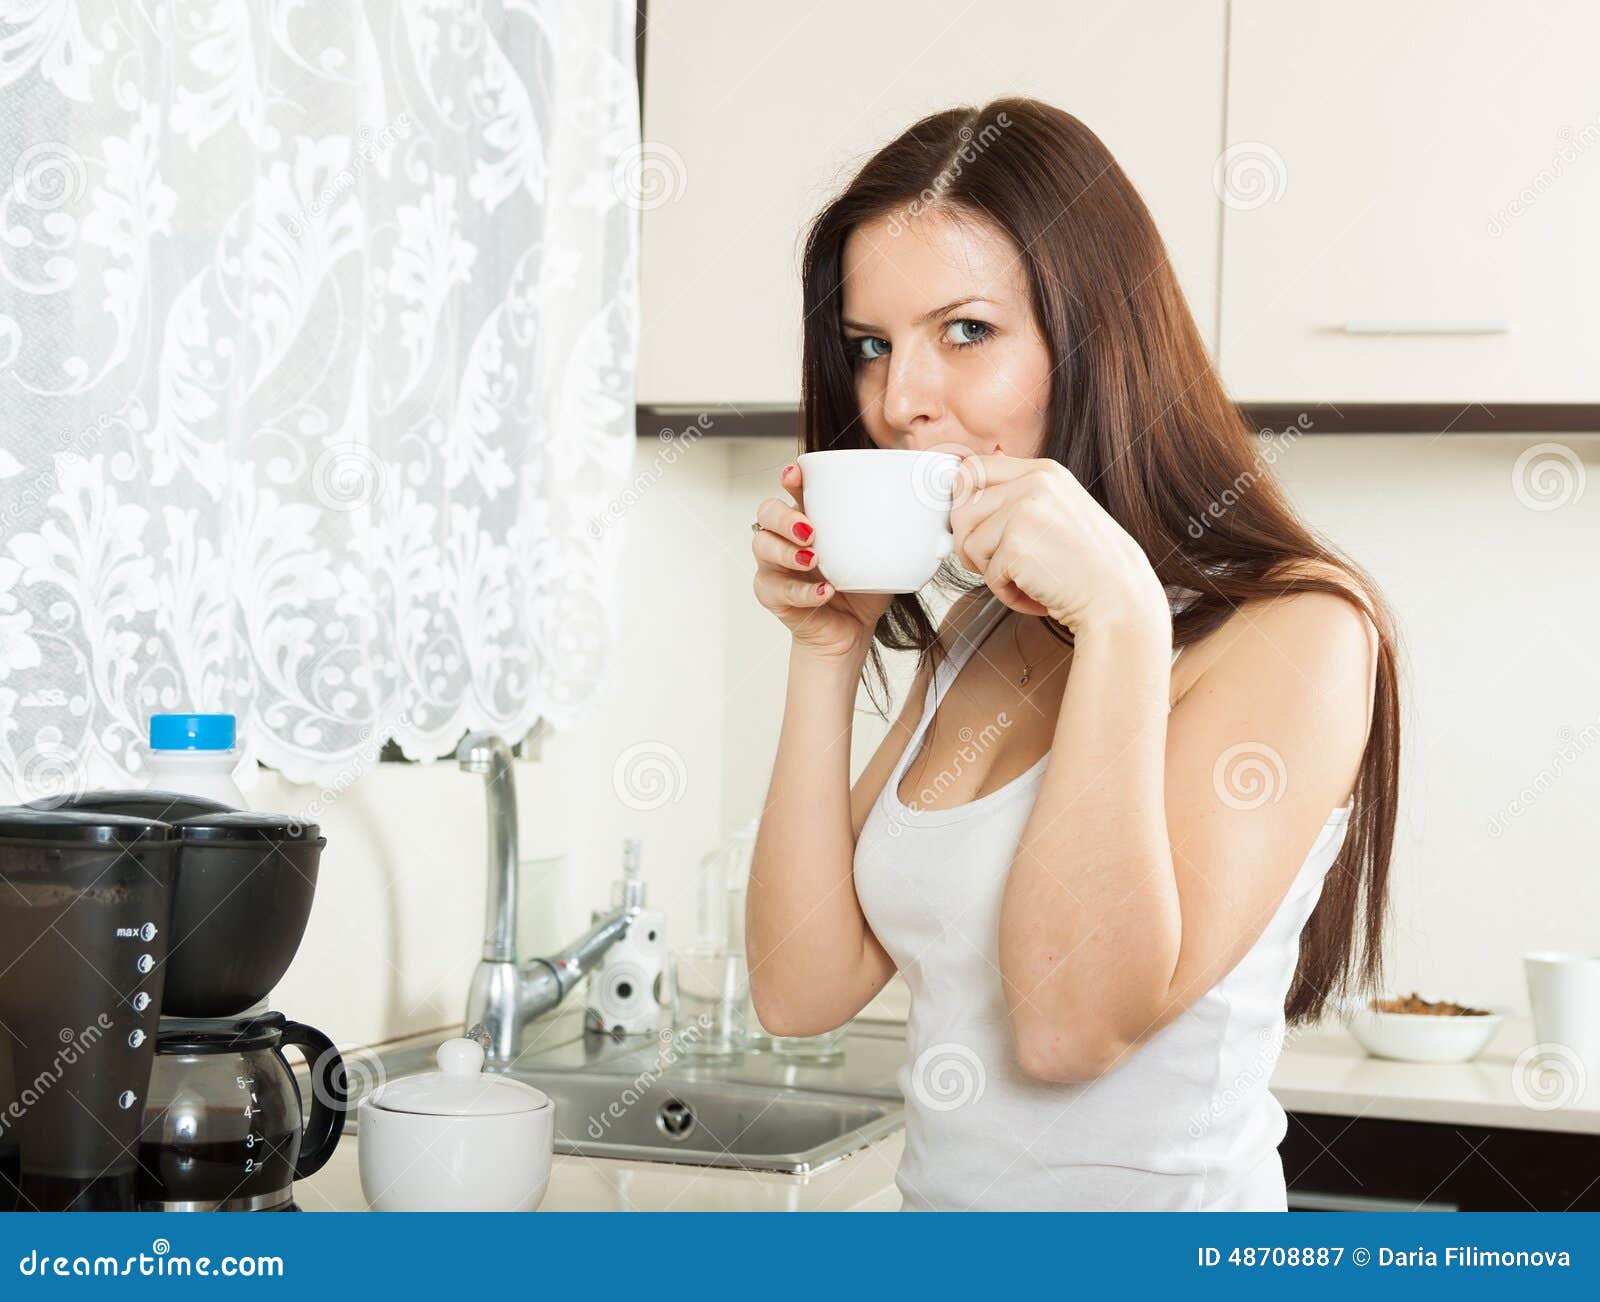 Попить на кухне. Девушка пьет кофе. Девушка пьет кофе на кухне. Девушка на кухне, пьющая кофе. Девушка пьет чай на кухне.